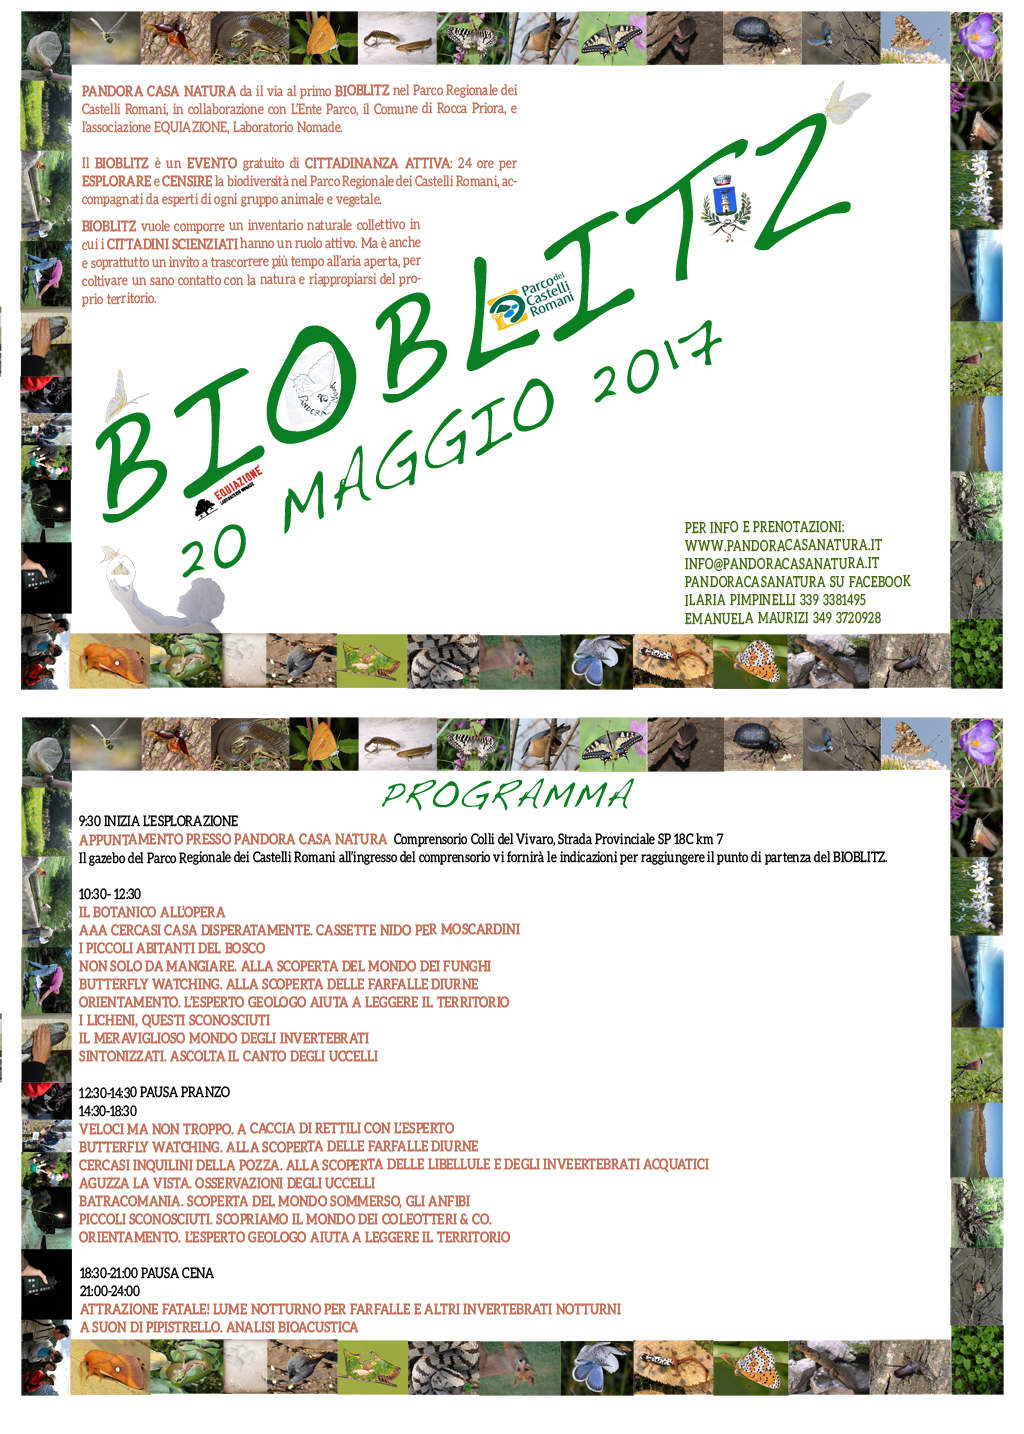 BioBlitz alla Doganella, nel Parco dei Castelli Romani, il 20 maggio 2017